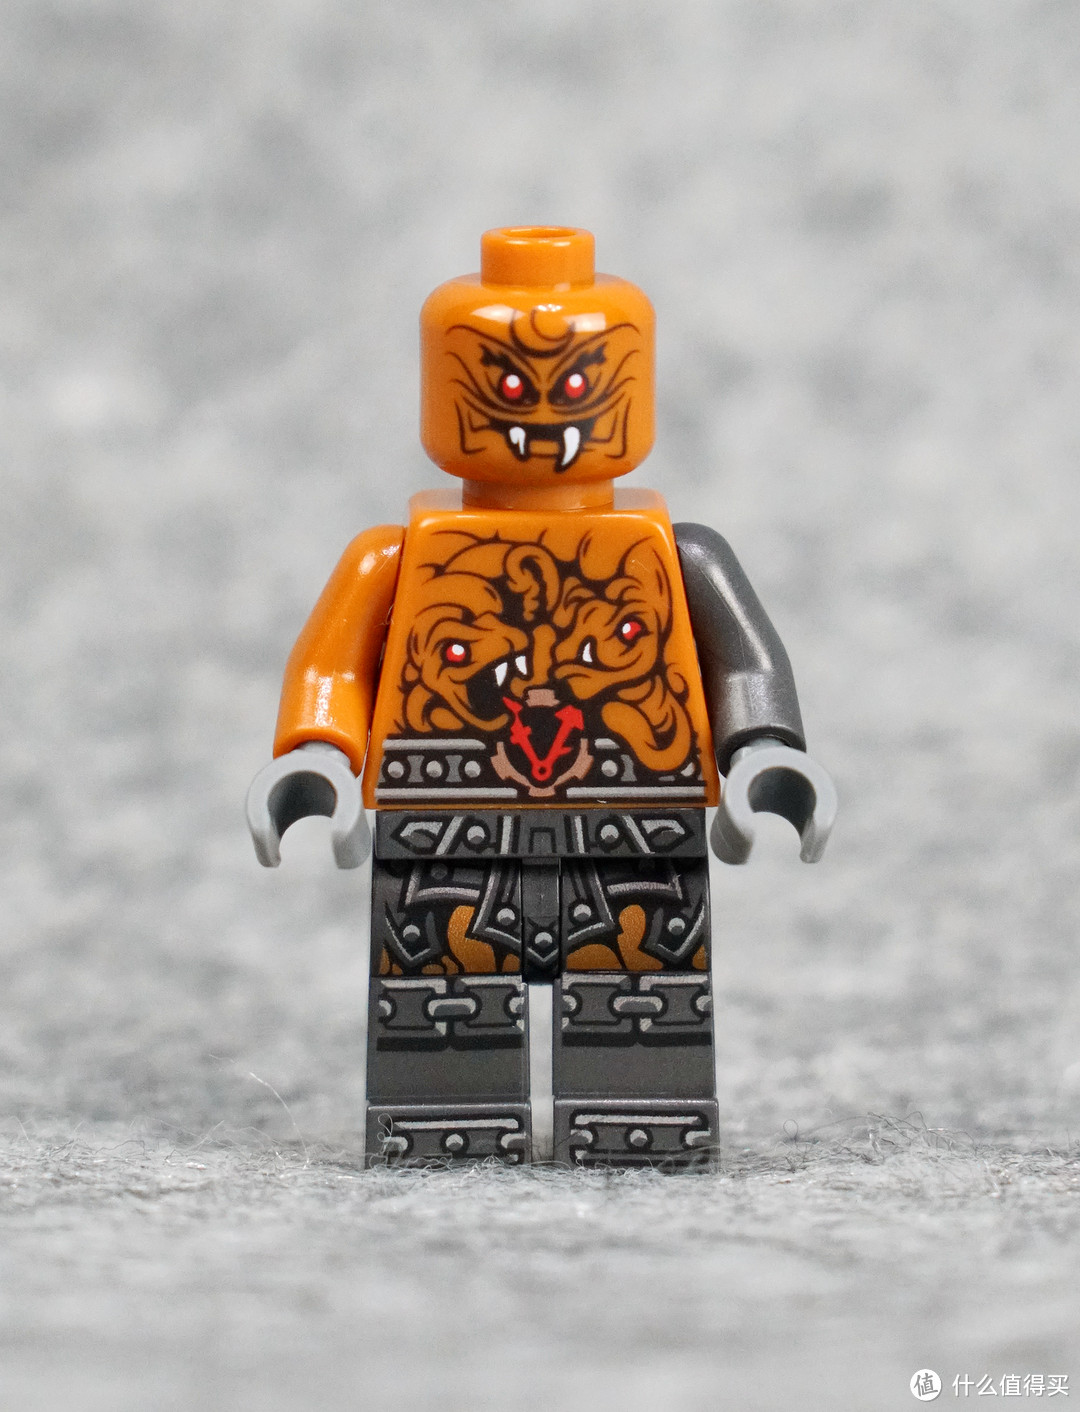 人仔就已经值回票价:lego乐高 70624 ninjago 幻影忍者系列 红蛇投石